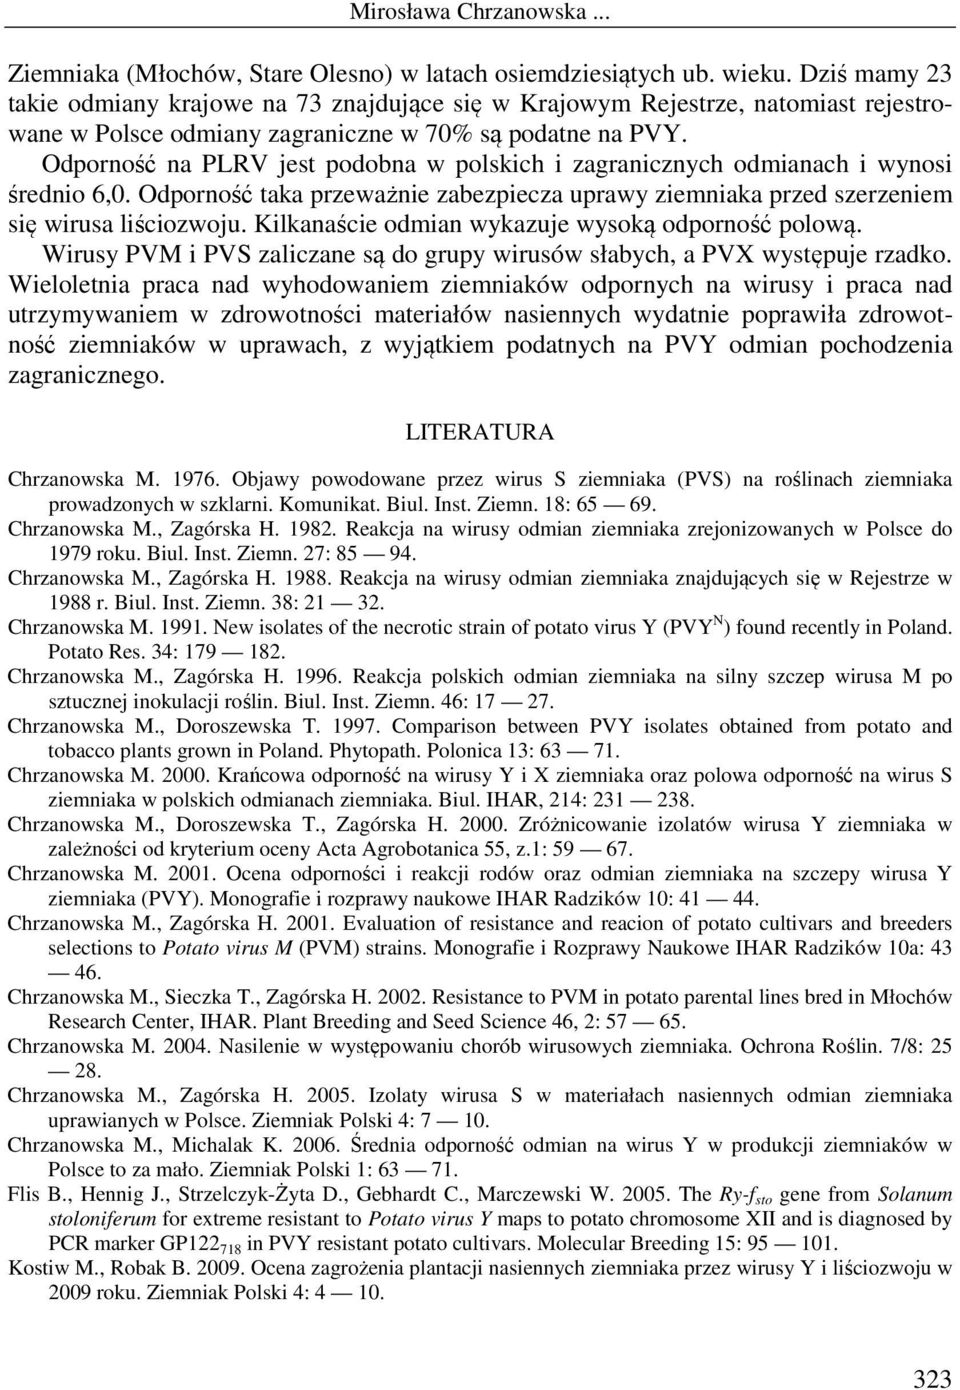 Odporność na PLRV jest podobna w polskich i zagranicznych odmianach i wynosi średnio 6,0. Odporność taka przeważnie zabezpiecza uprawy ziemniaka przed szerzeniem się wirusa liściozwoju.